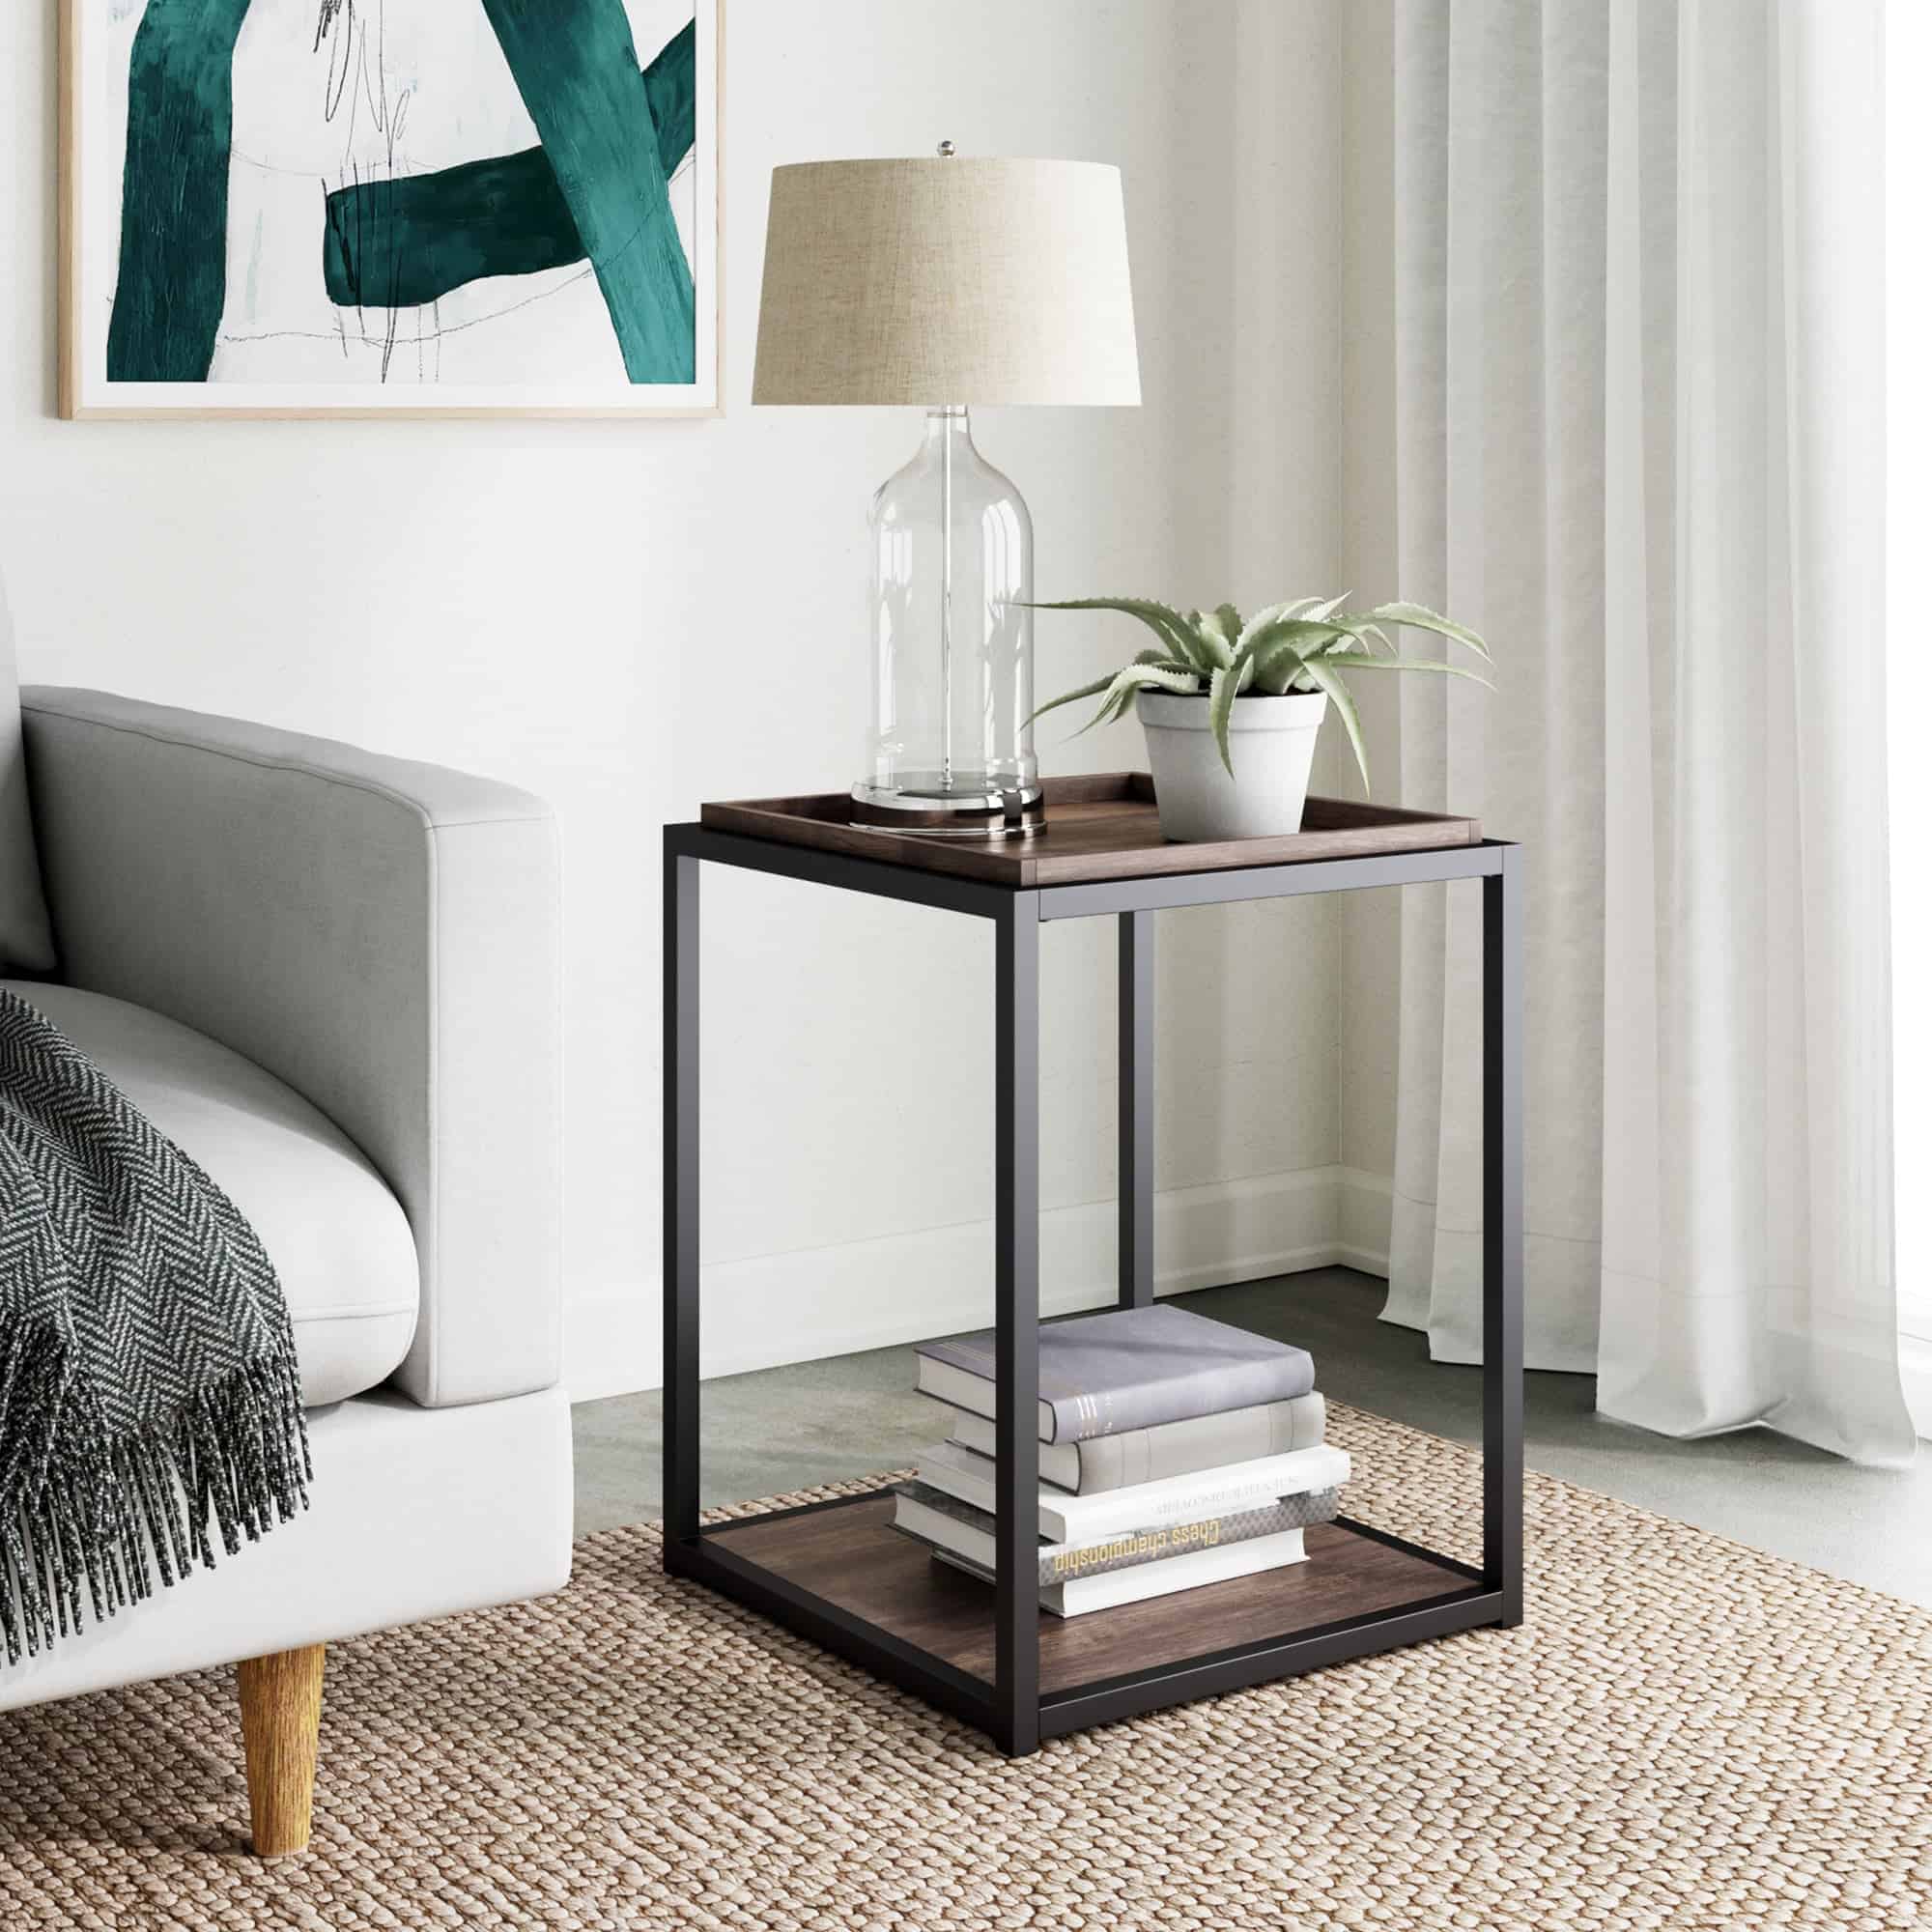 modern bedside table design for bedroom decor